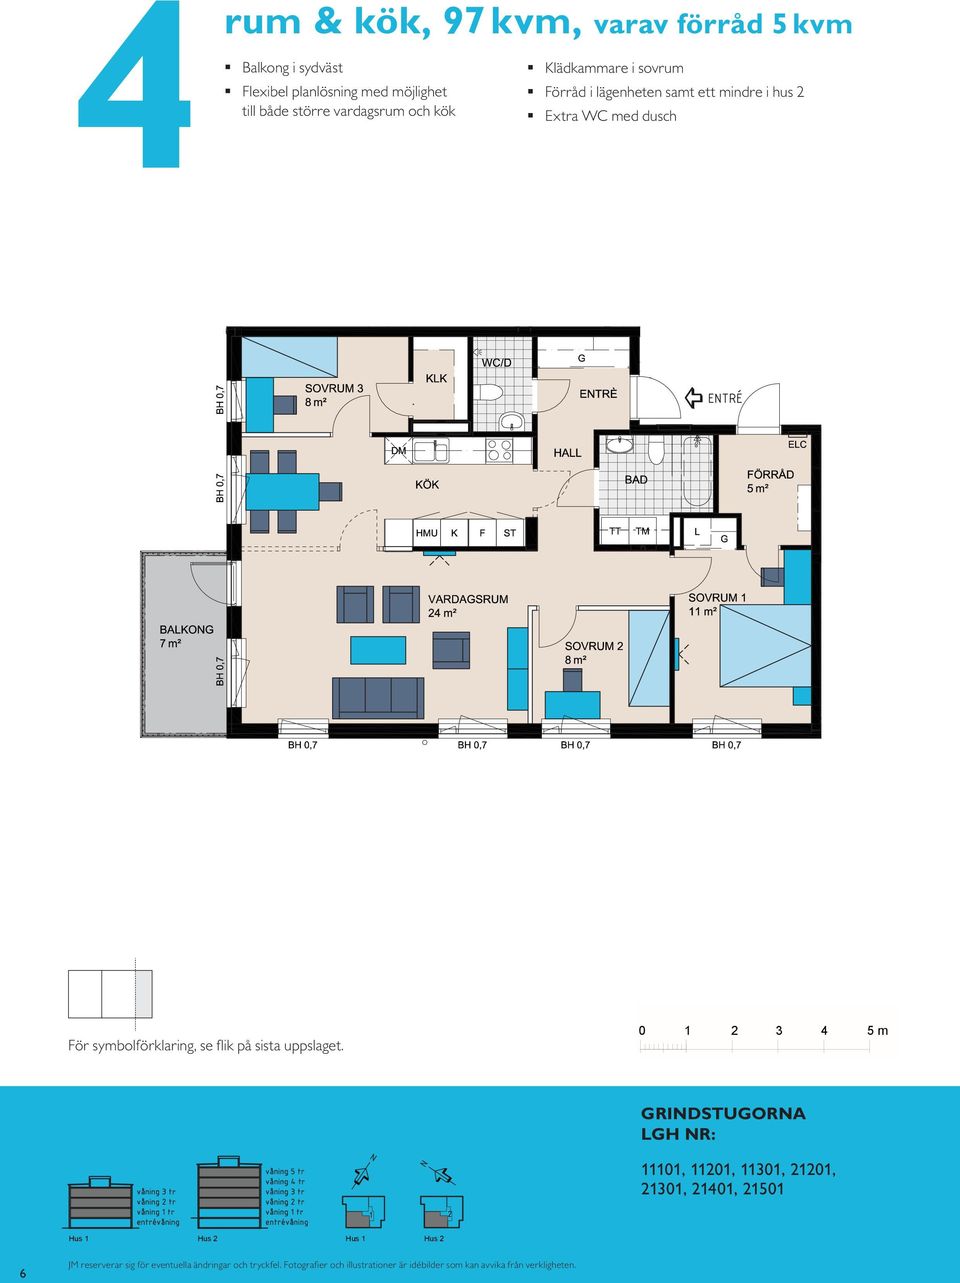 med möjlighet till både större Kompakt lägenhet med öppna rumssamband Sovrum med plats för två Balkong mot gård rum & kök, 97 m², varav förråd 5 m² Balkong i sydväst Flexibel planlösning med